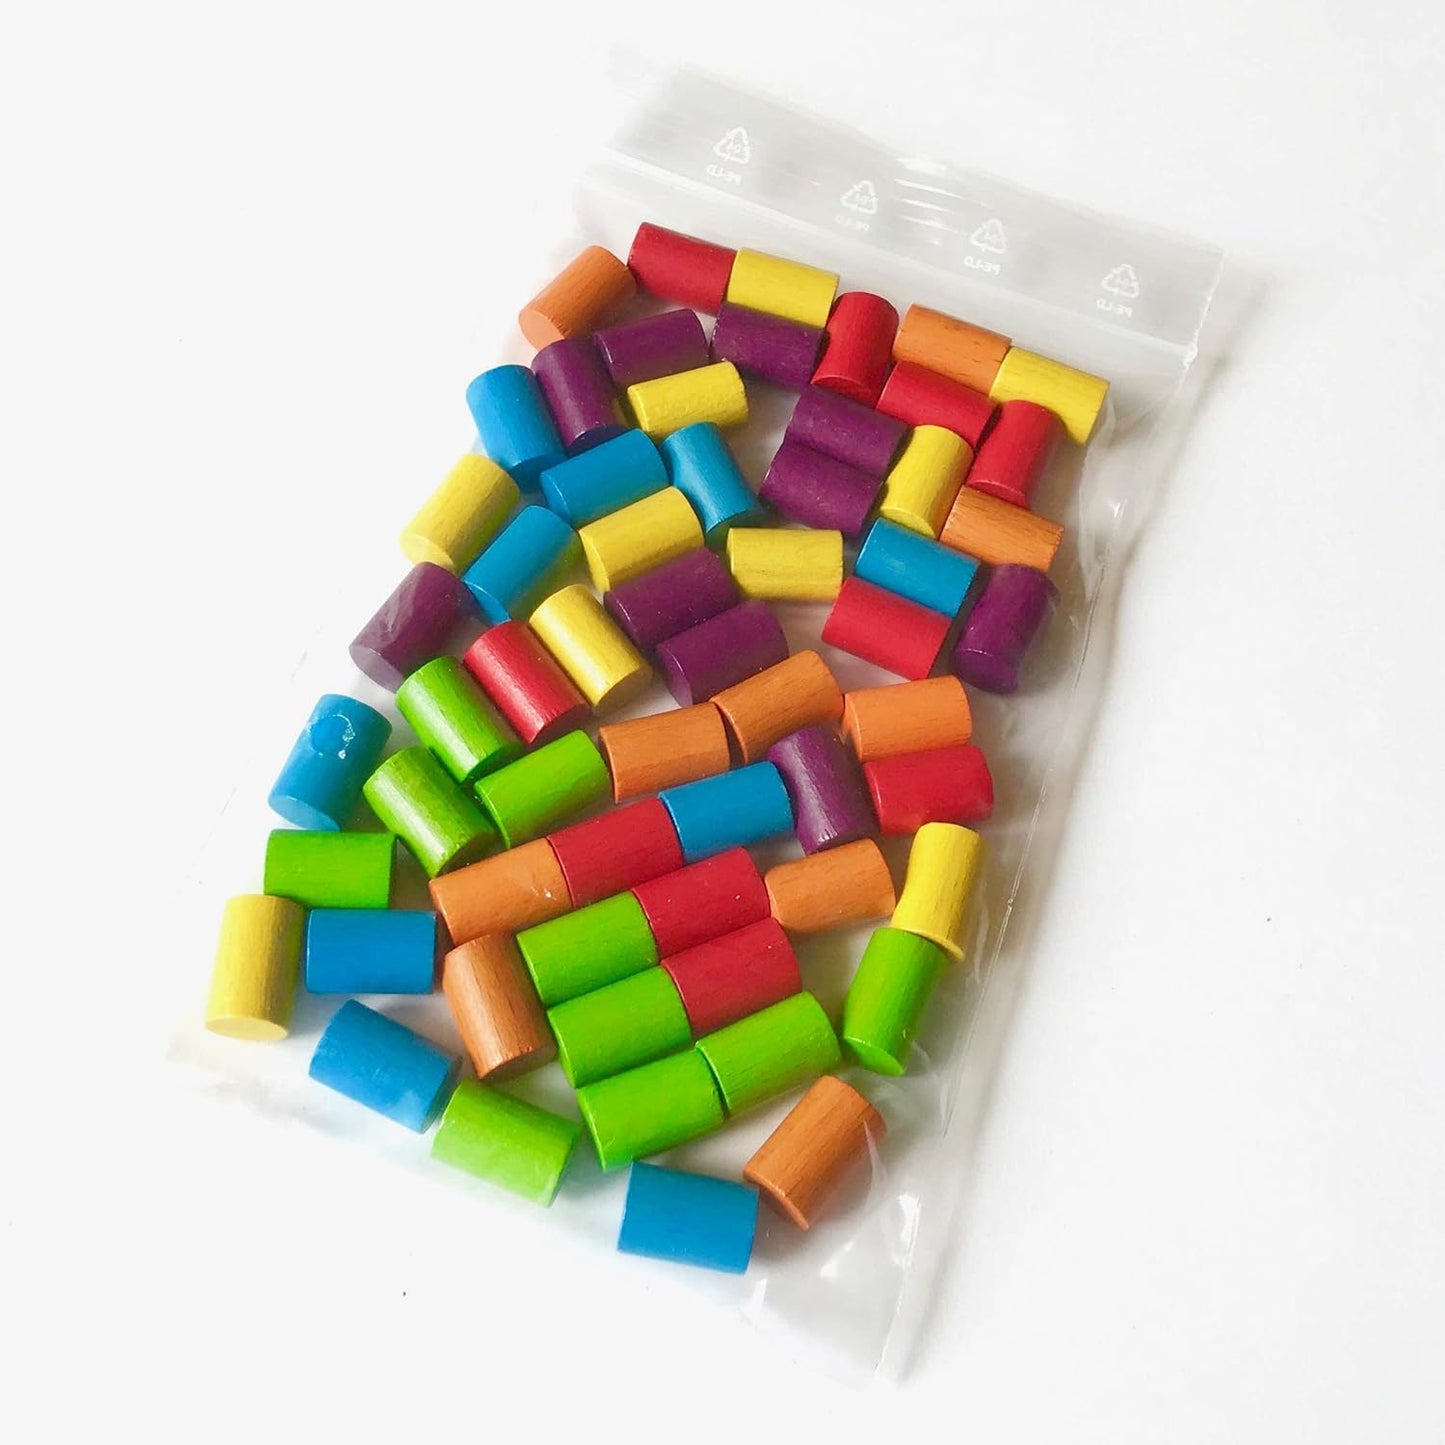 Spieltz Spielsteine - Zylinder aus Holz für Brettspiele, 10x15 mm, farblich gemischt, verschiedene Farbsets verfügbar